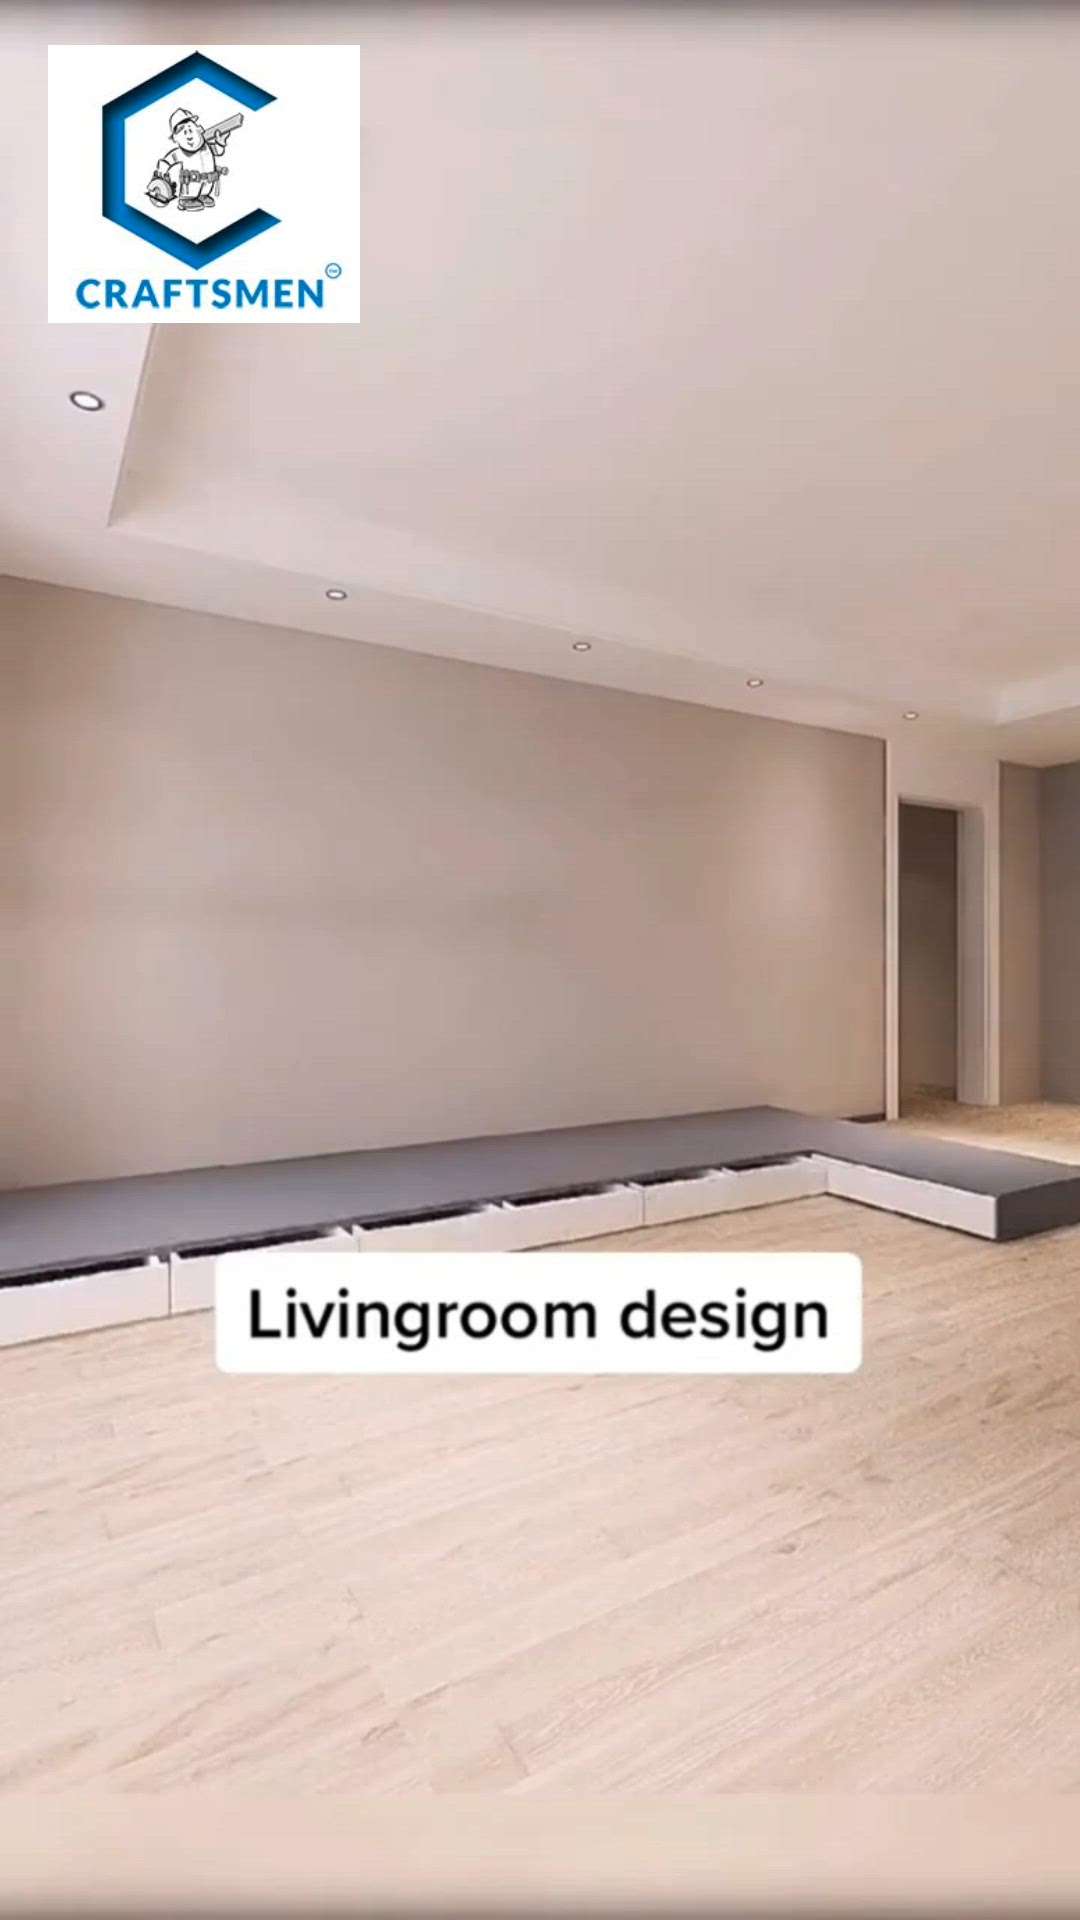 "Craftsman-inspired living room design, blending timeless elegance with modern comfort. #CraftsmanStyle #HomeDecor #TrendingDesigns 🏡✨"